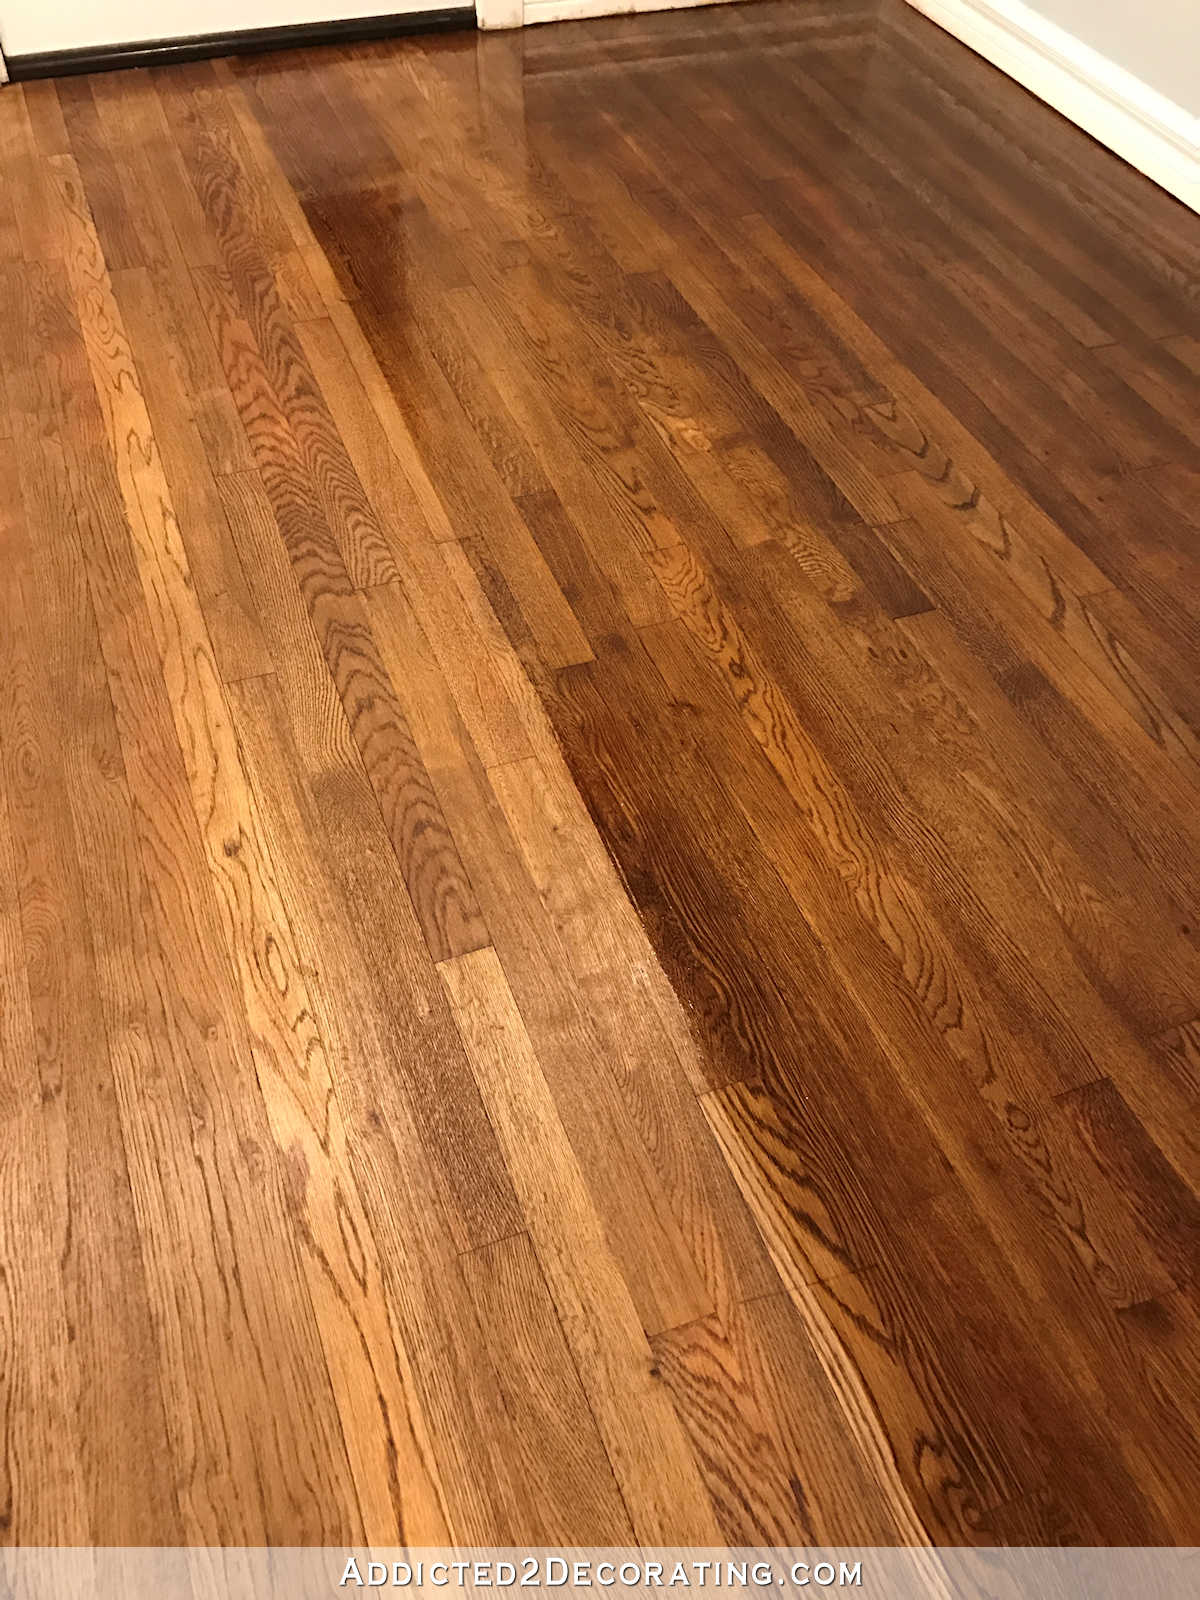 My Newly Refinished Red Oak Hardwood Floors